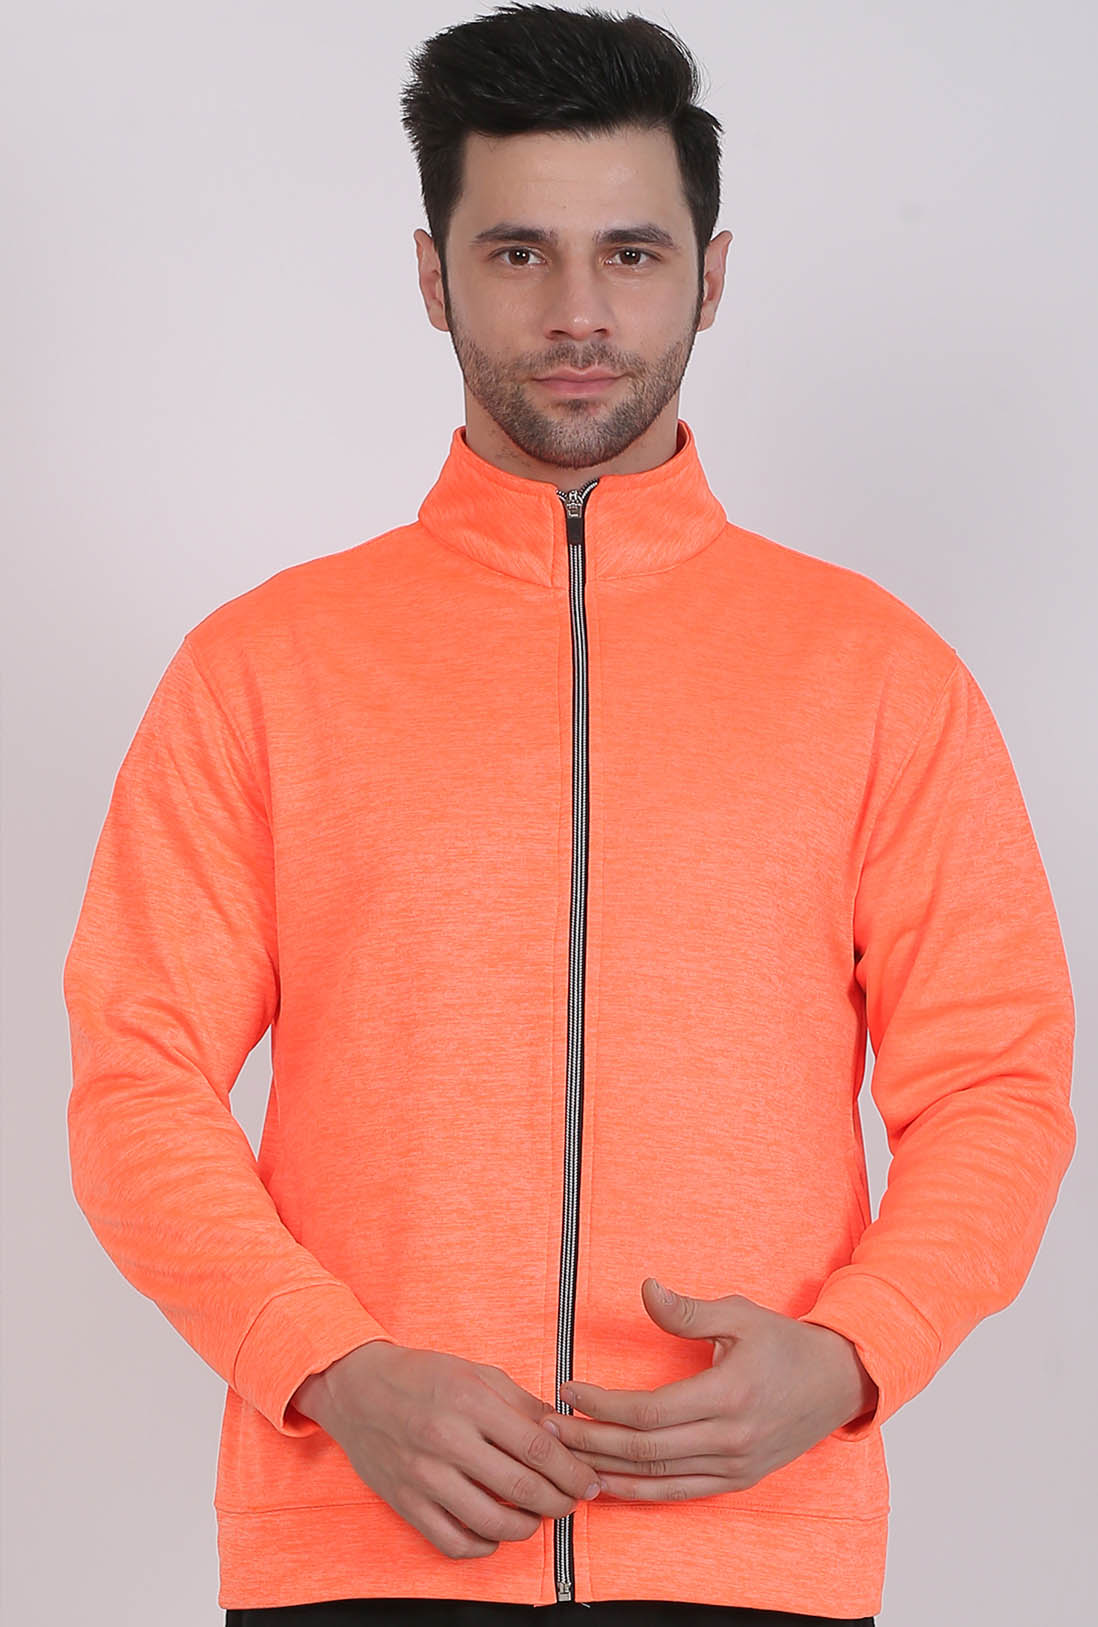 Sports Wear Men's Orange Zipper